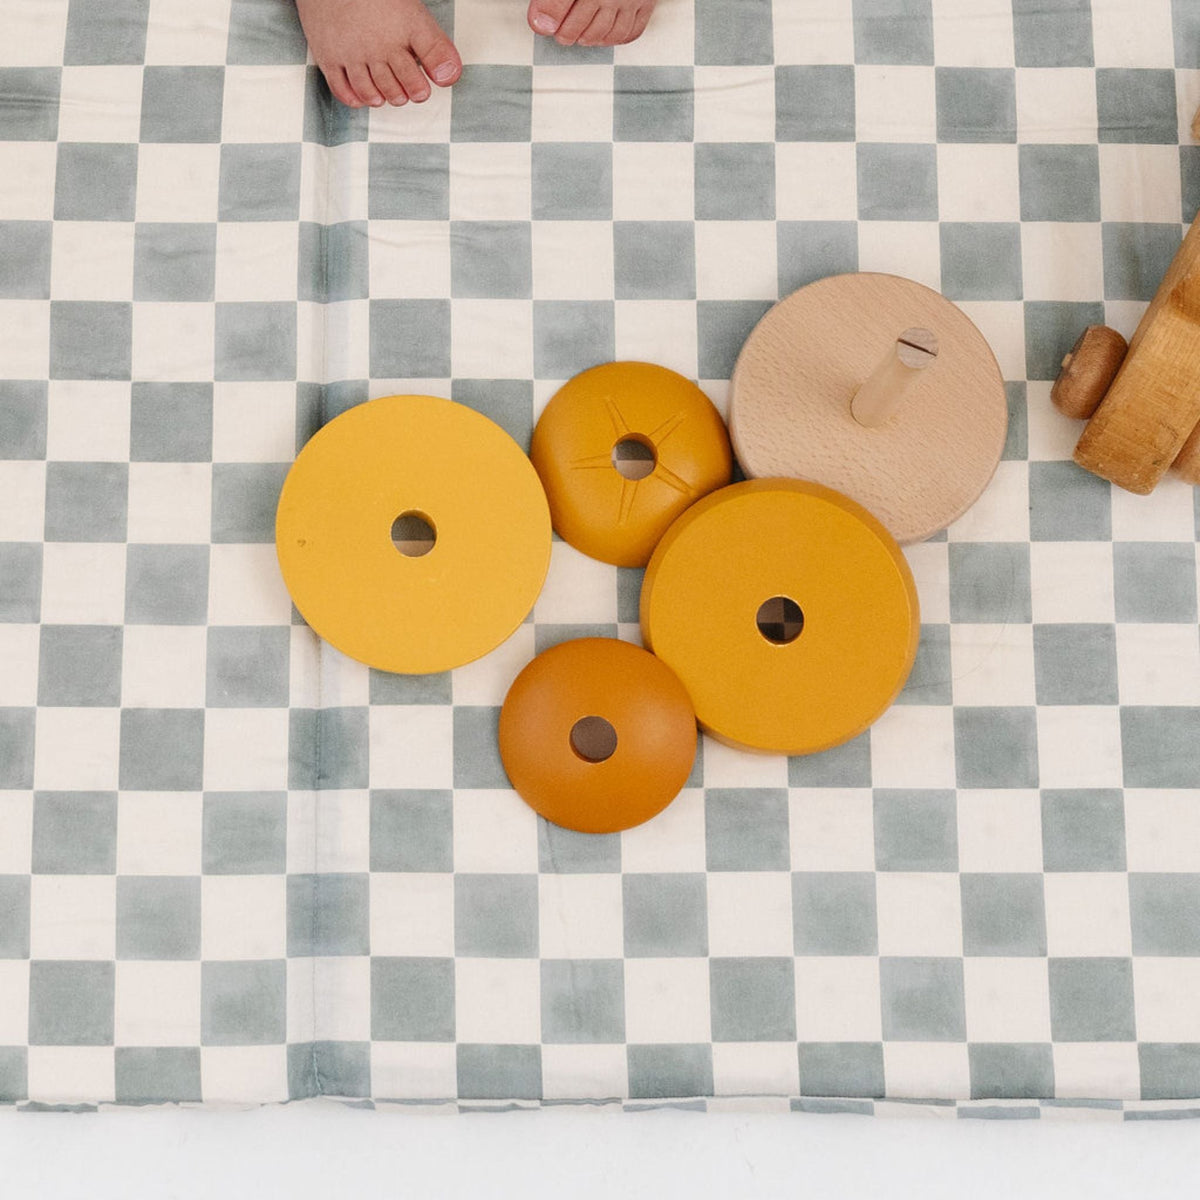 Toki Mats x Project Nursery Checker Padded Playmat - Matcha